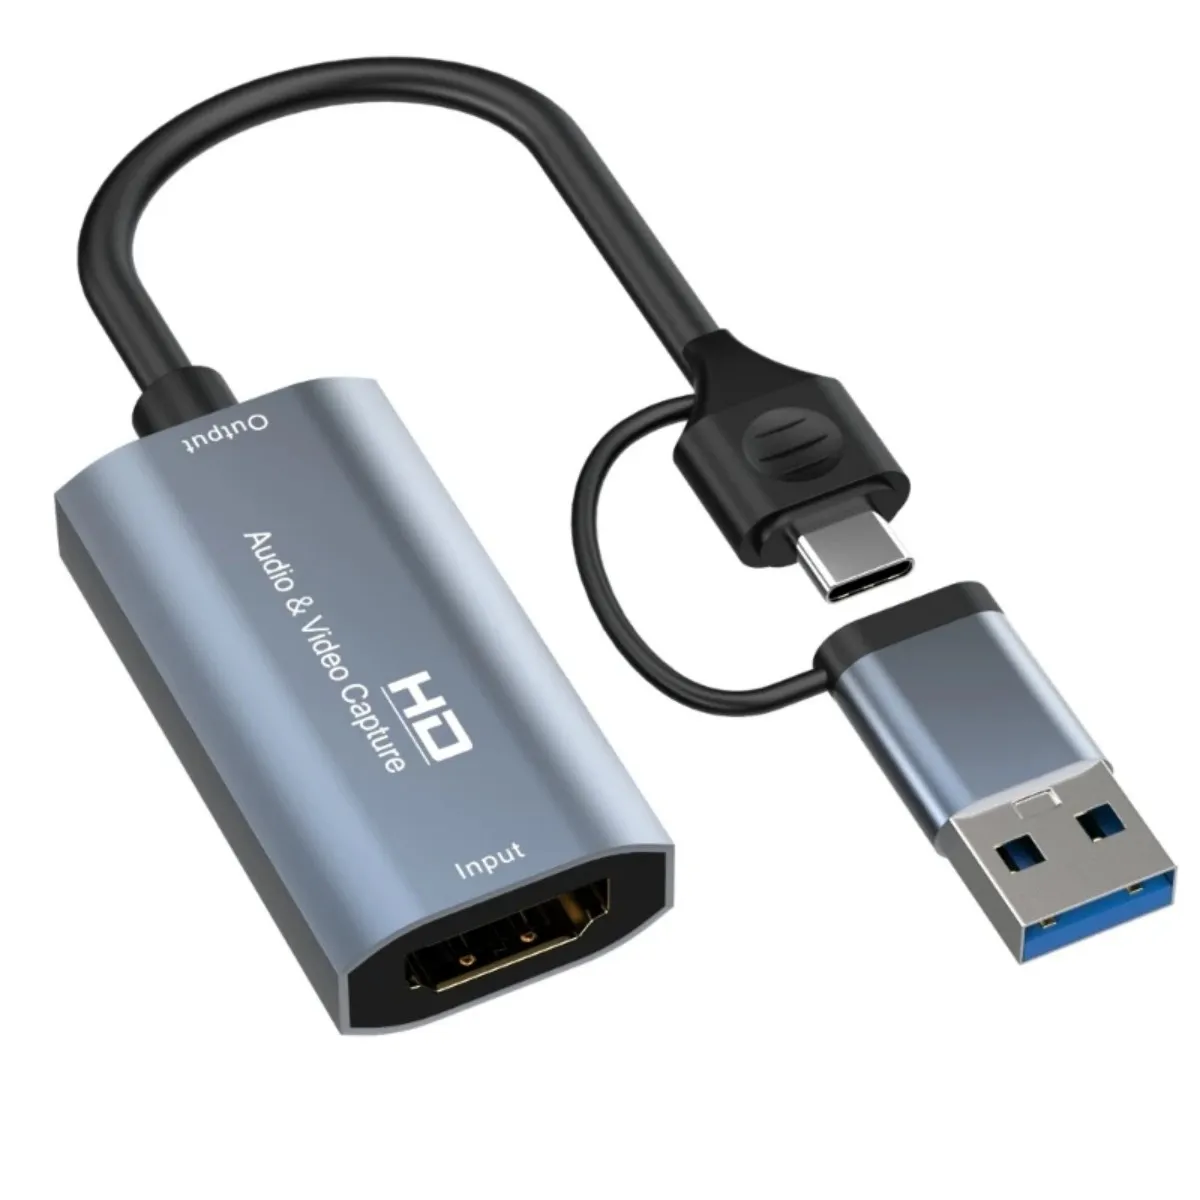 USB 2.0 Video Capture Card Audio Grabber,for DVD,VHS,V8,8MM Video